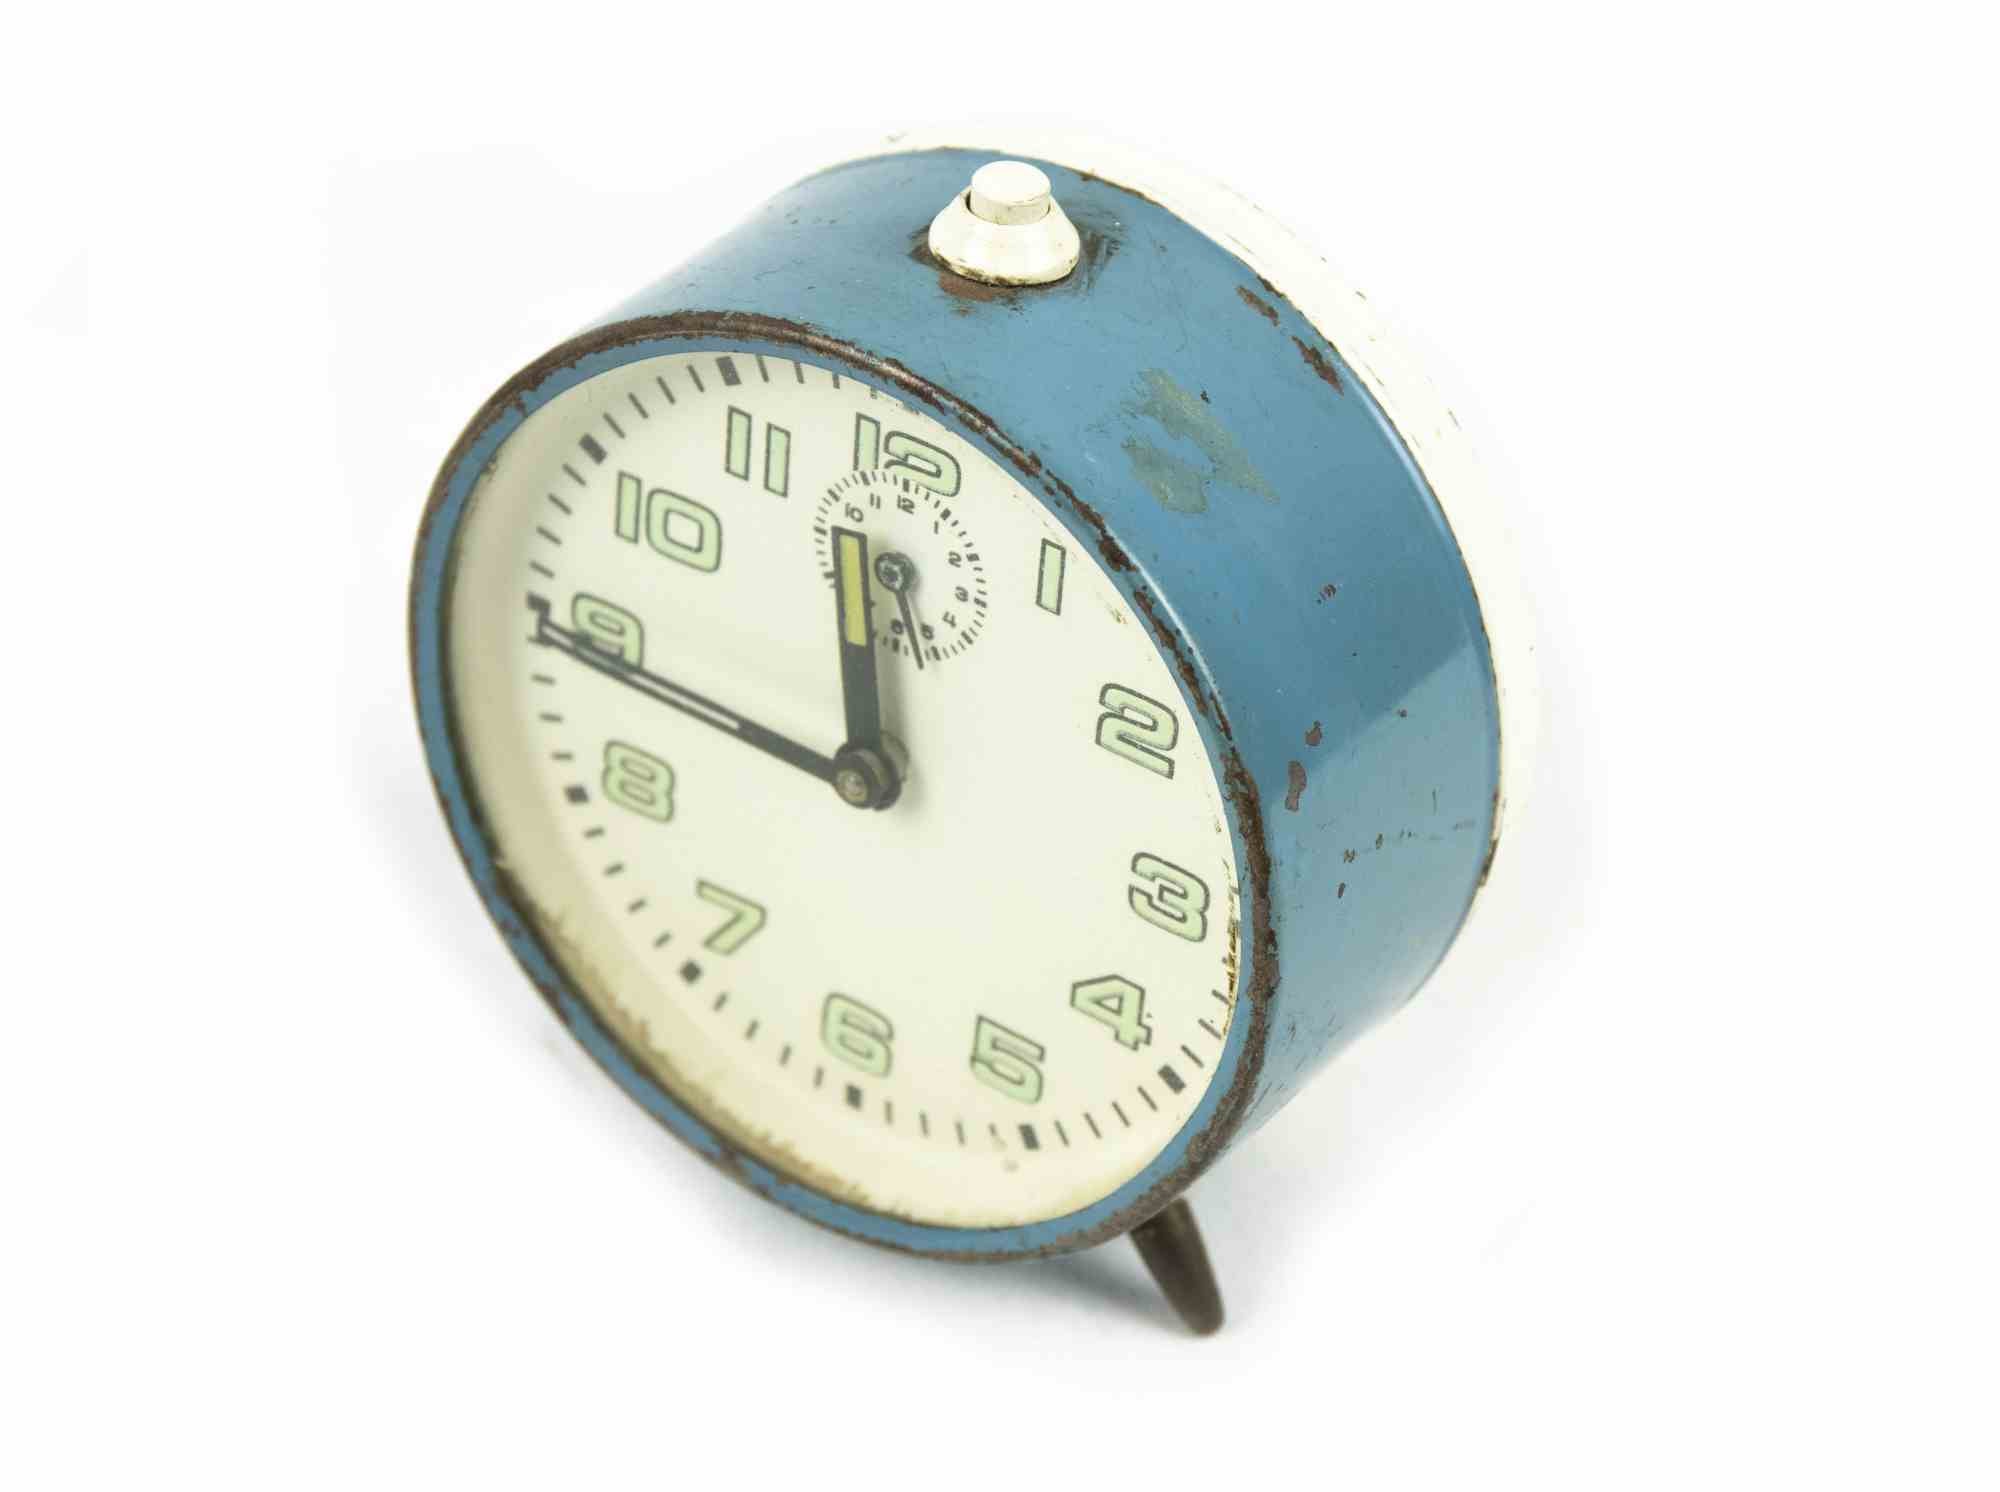 Le réveil vintage est un objet de décoration réalisé dans les années 1970.

Une horloge vintage de couleur bleu clair.

Le cadeau idéal pour un saut dans le passé.

Pas en parfait état en raison de l'époque.